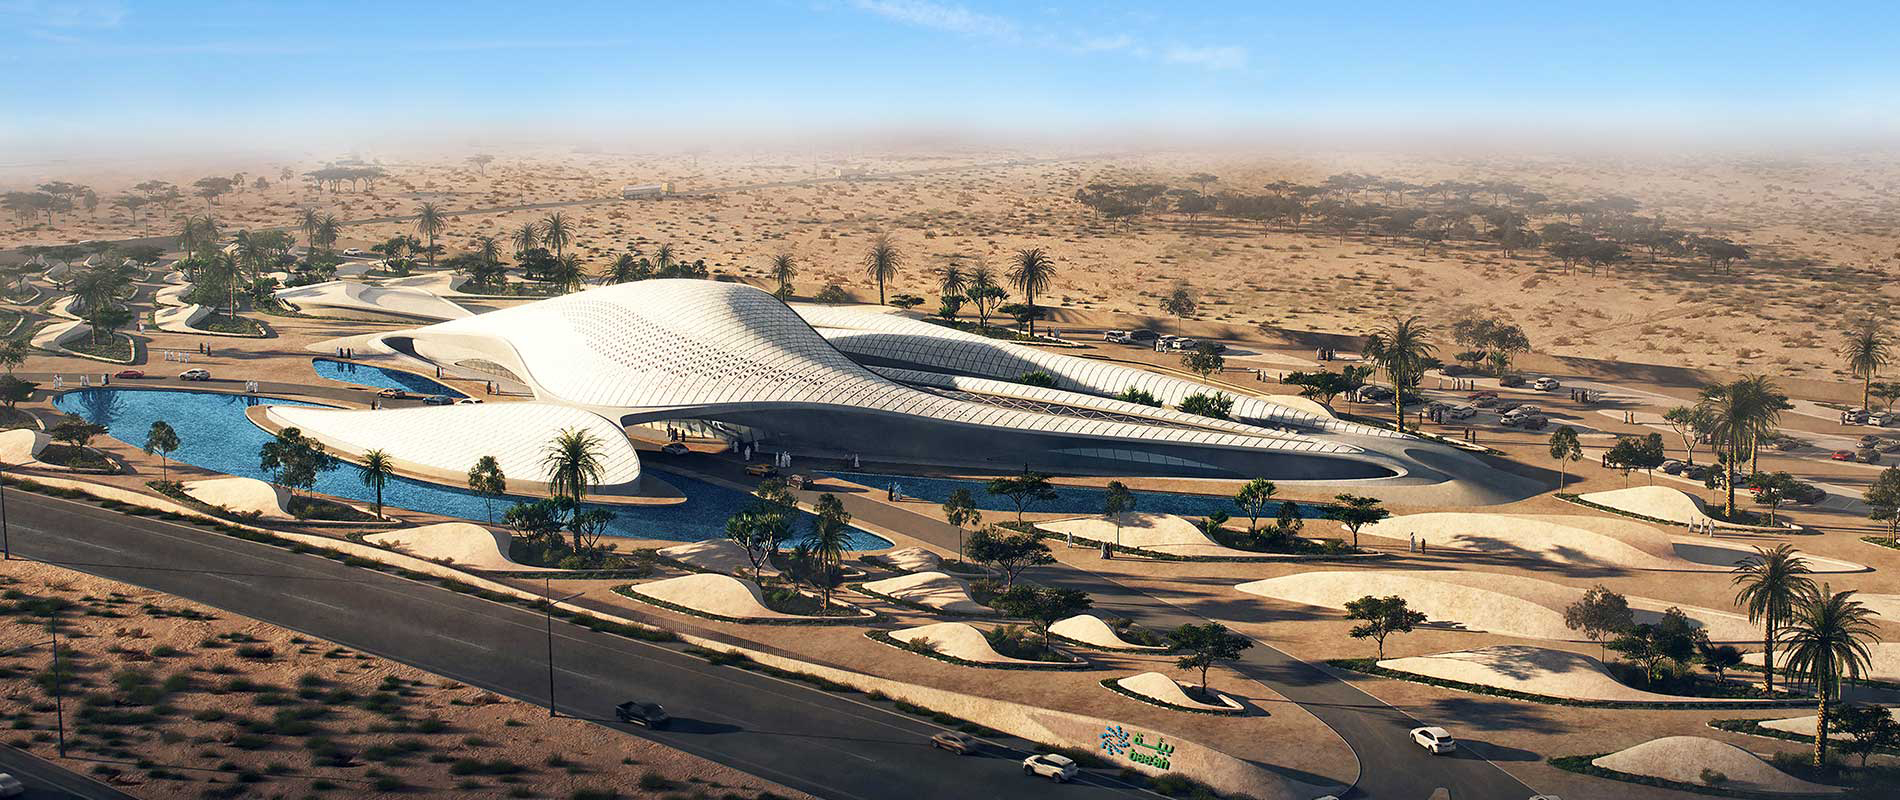 Hình ảnh và những đường cong tuyệt đẹp của tòa nhà lấy cảm hứng từ những cồn cát sa mạc đặc trưng của vùng Trung Đông. 